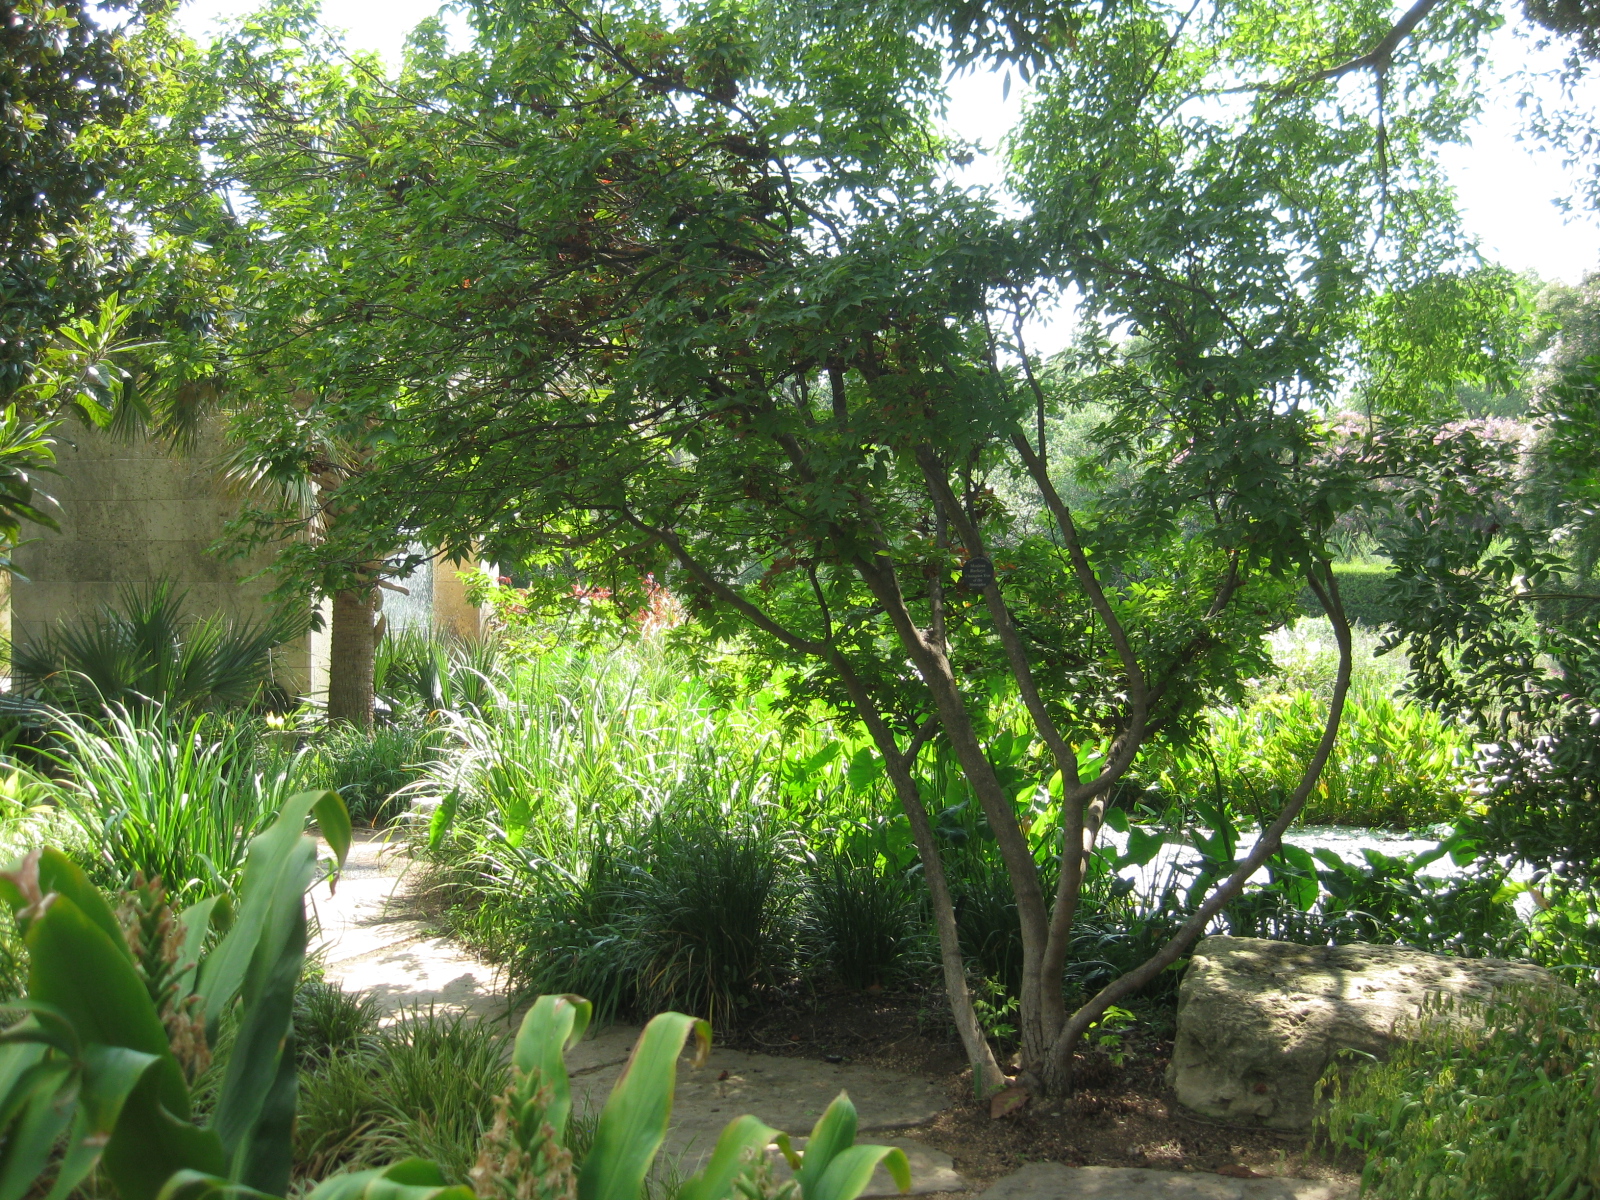 Mexican buckeye tree